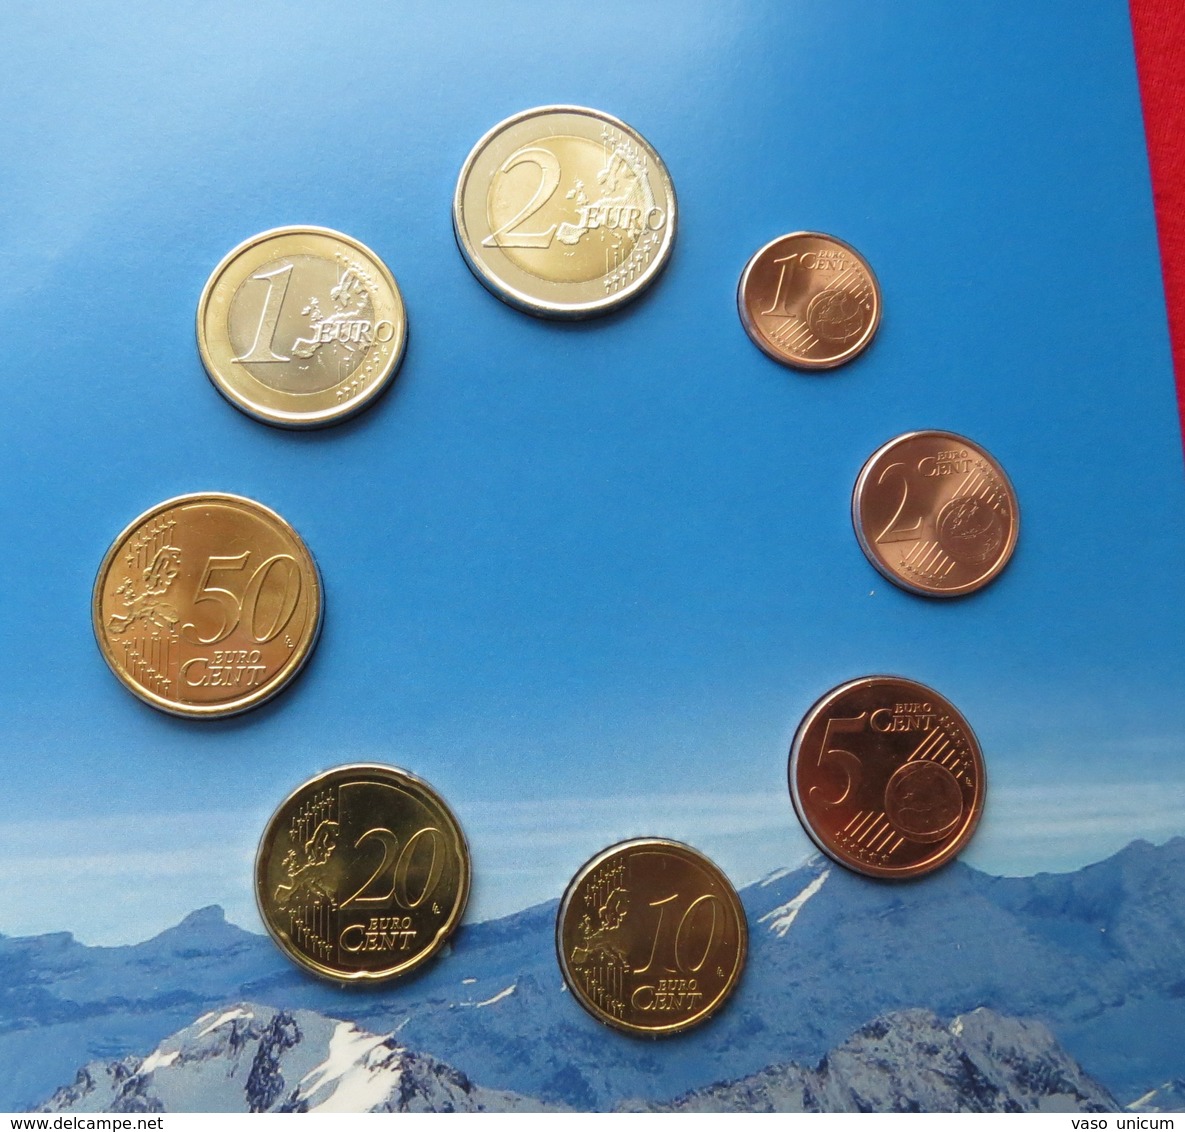 Andorra set 2013 DINER + EURo 2014 folder